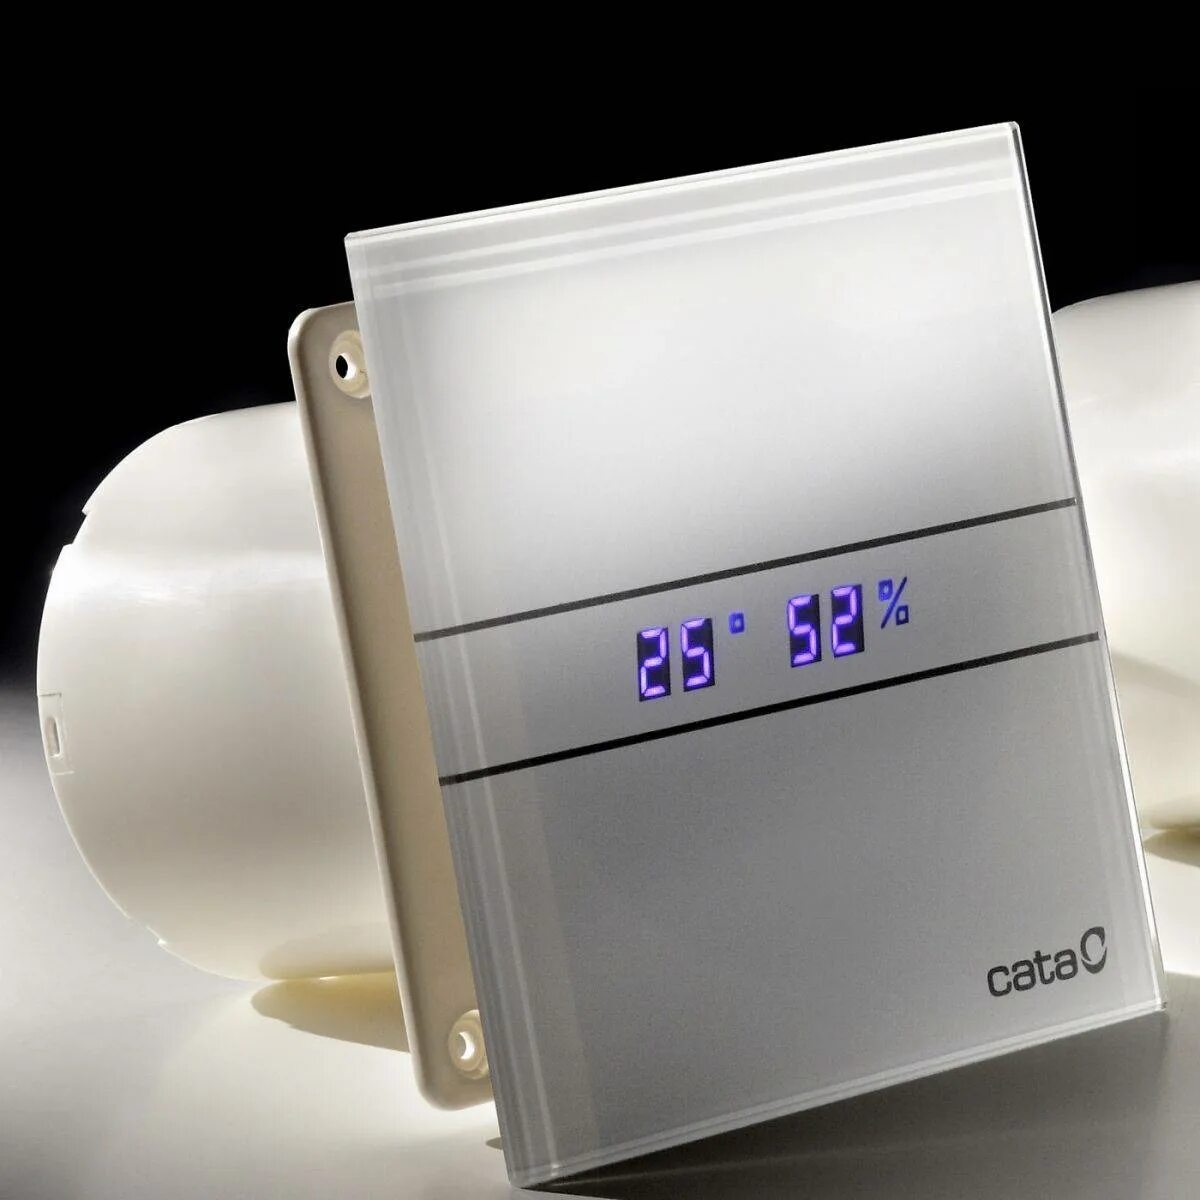 Вентилятор Cata e-100 GTH. Вентилятор вытяжной для ванной Cata. Вентилятор вытяжной 100 для ванной с датчиком влажности. Вентилятор с датчиком влажности для ванной 100мм. Вентилятор с датчиком таймером